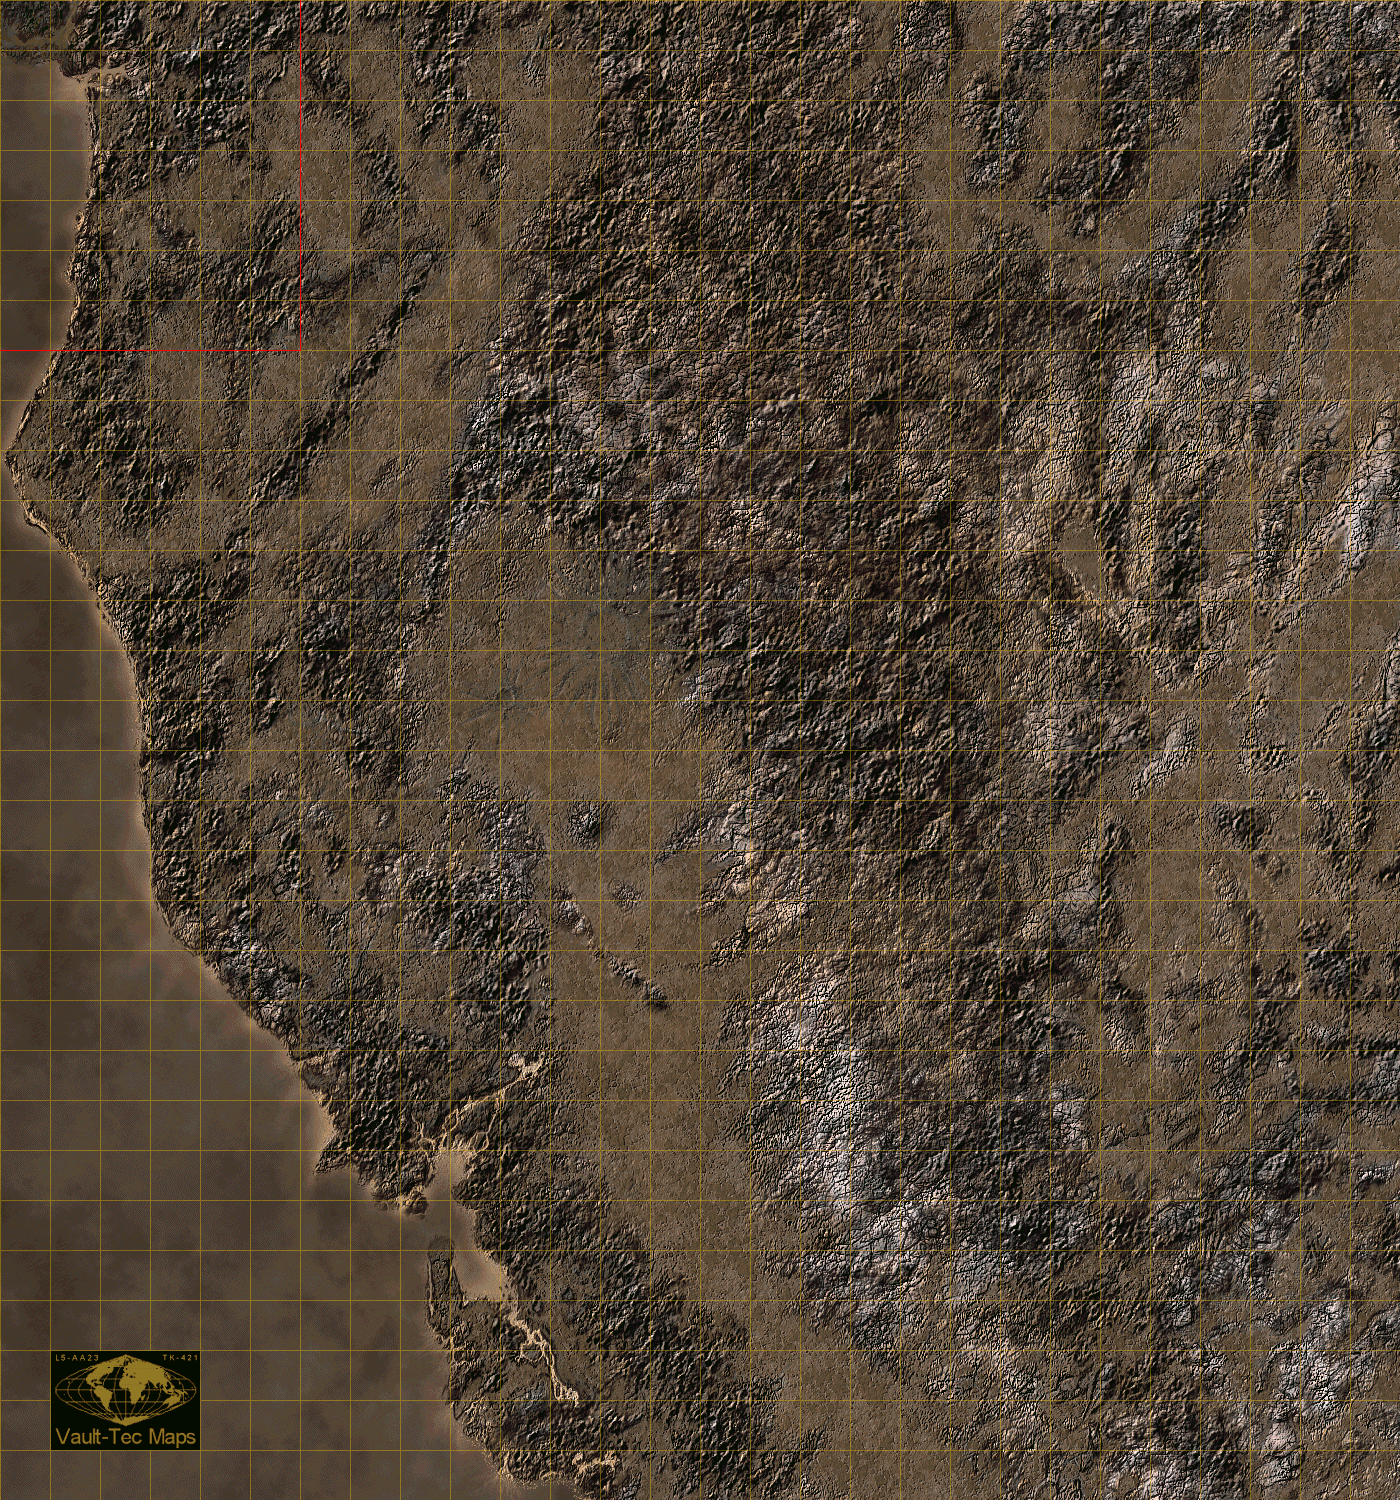 как найти убежище 75 в fallout 4 на карте фото 48